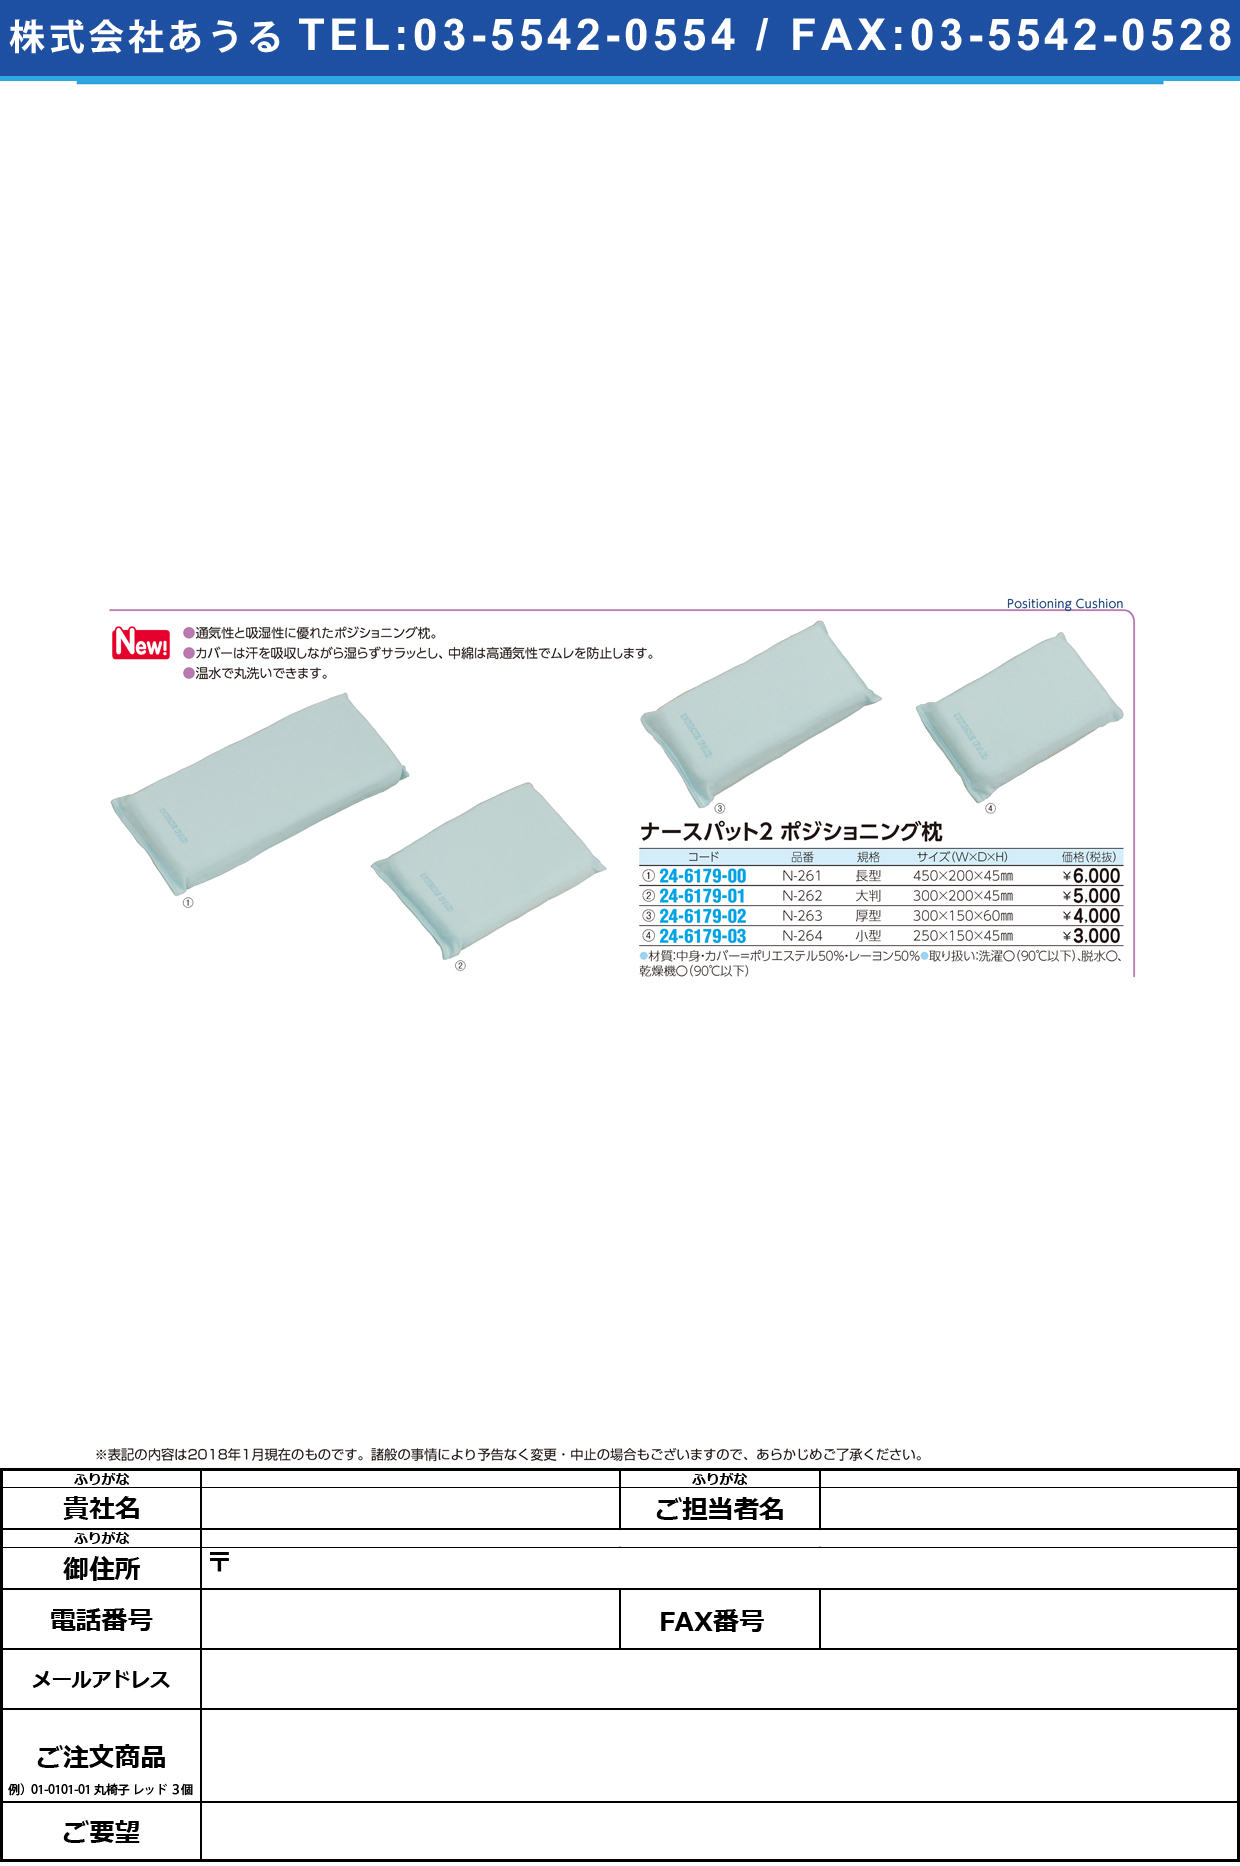 (24-6179-00)ナースパット２ポジショニング枕 N-261(ﾅｶﾞｶﾞﾀ) ﾅｰｽﾊﾟｯﾄ2【1個単位】【2018年カタログ商品】